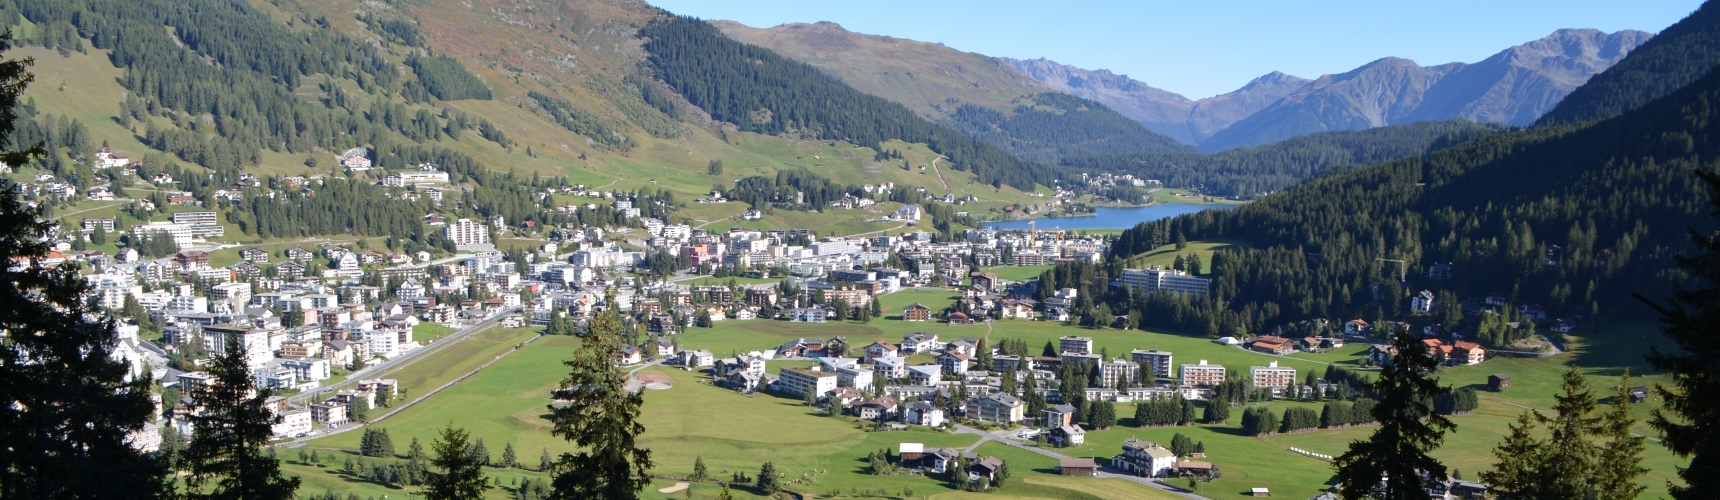 Davos Dorf von der Ischalp gesehen